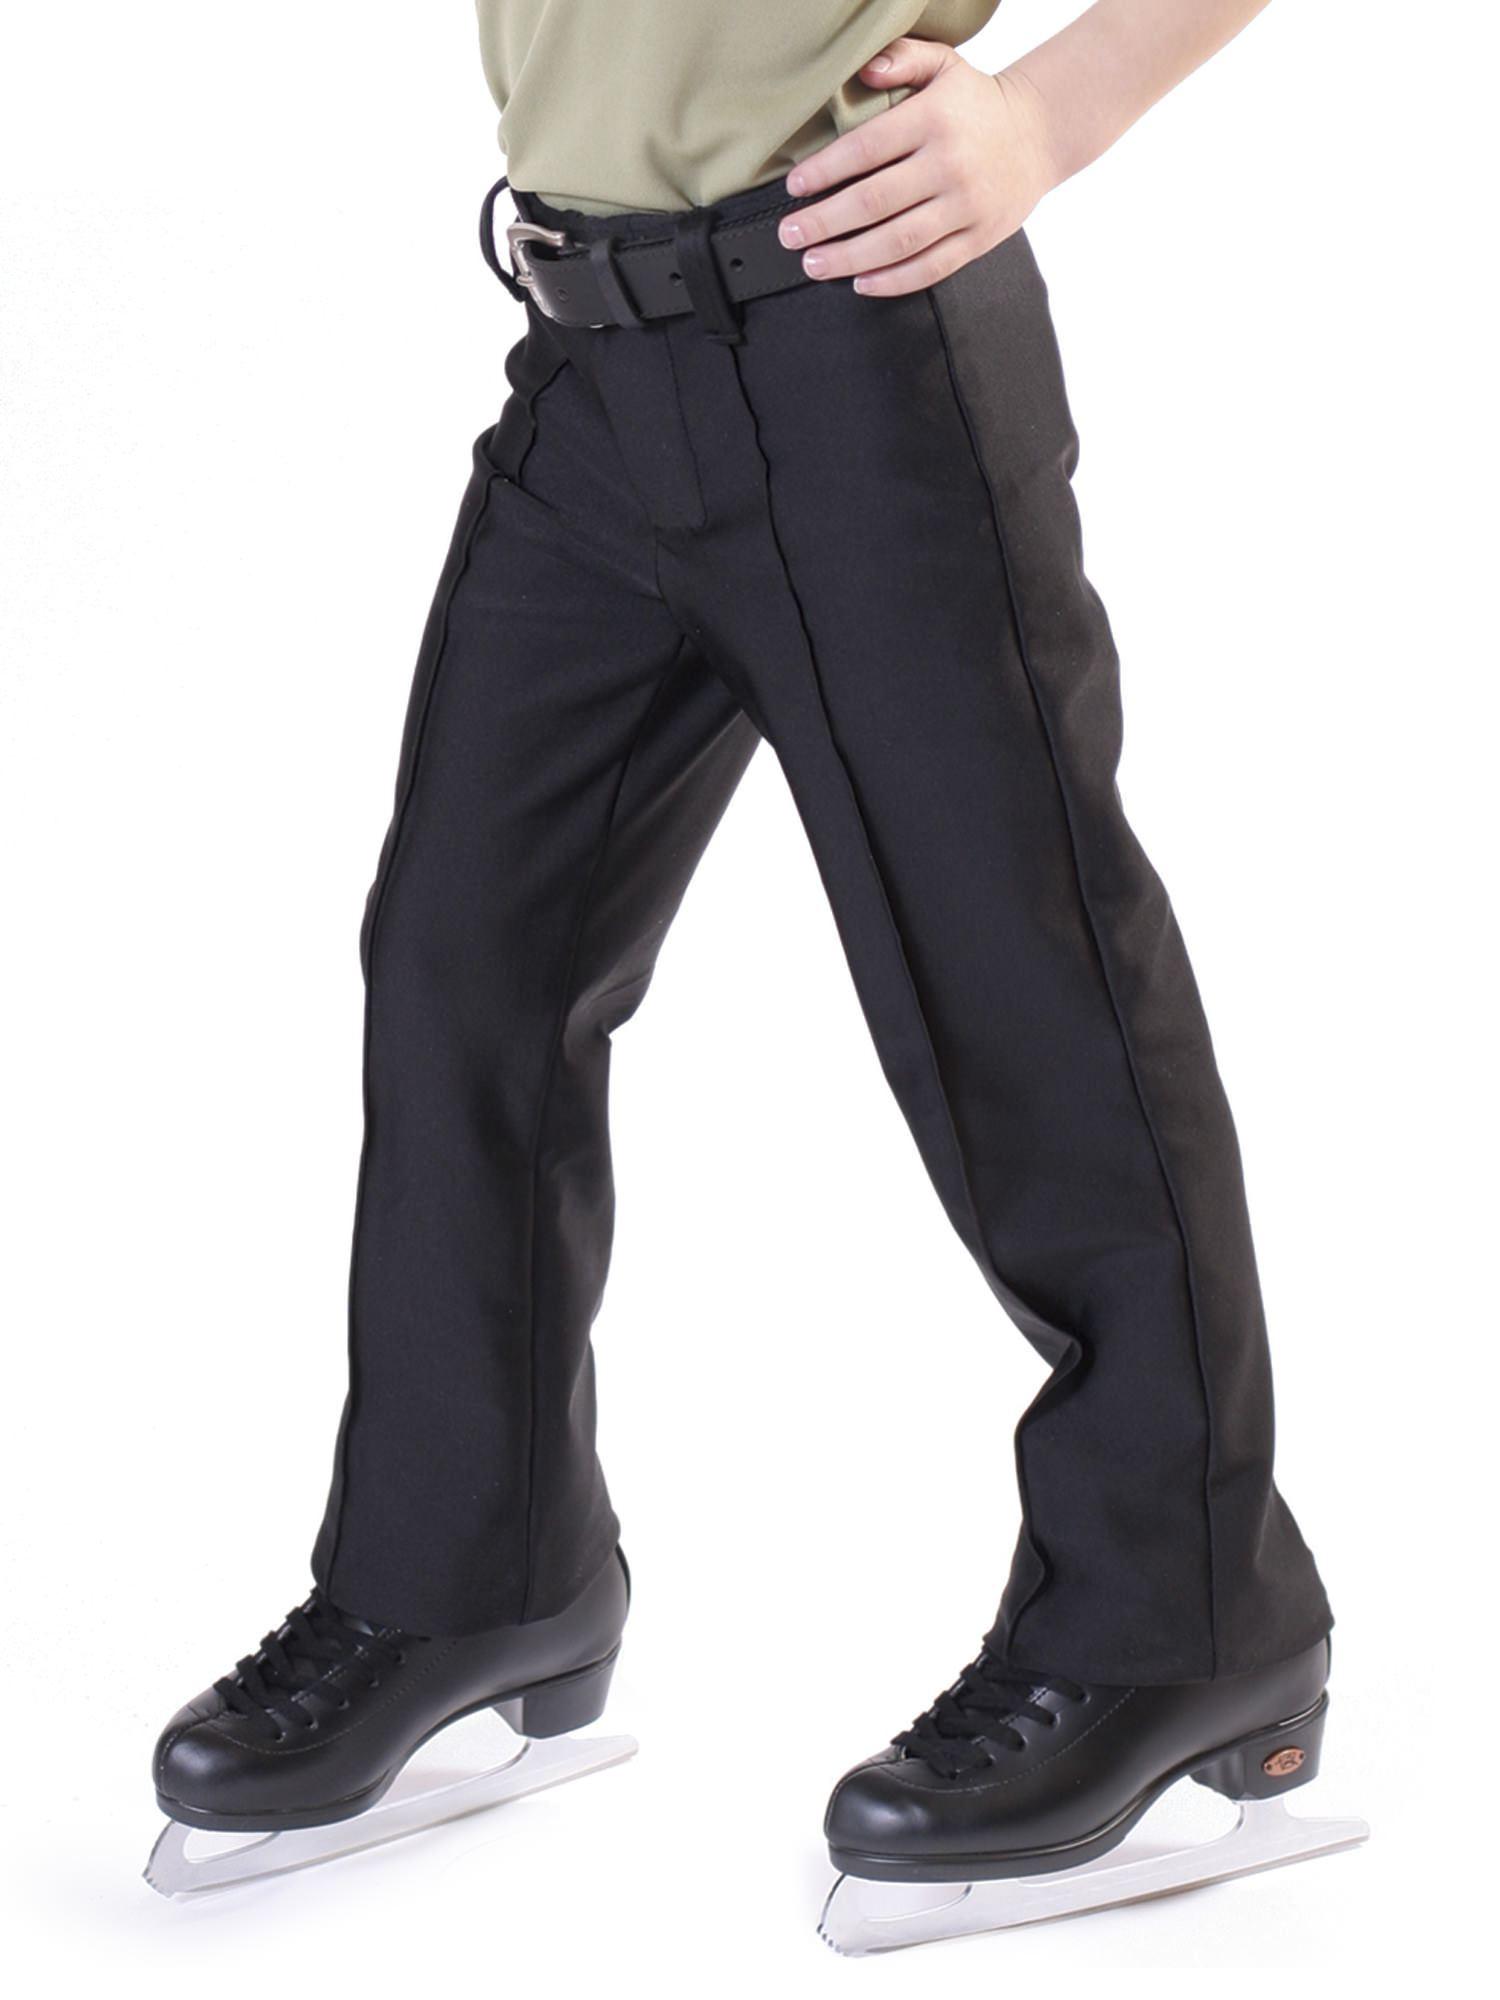 Jalie 2803 - Stretch Pants Pattern for Boys